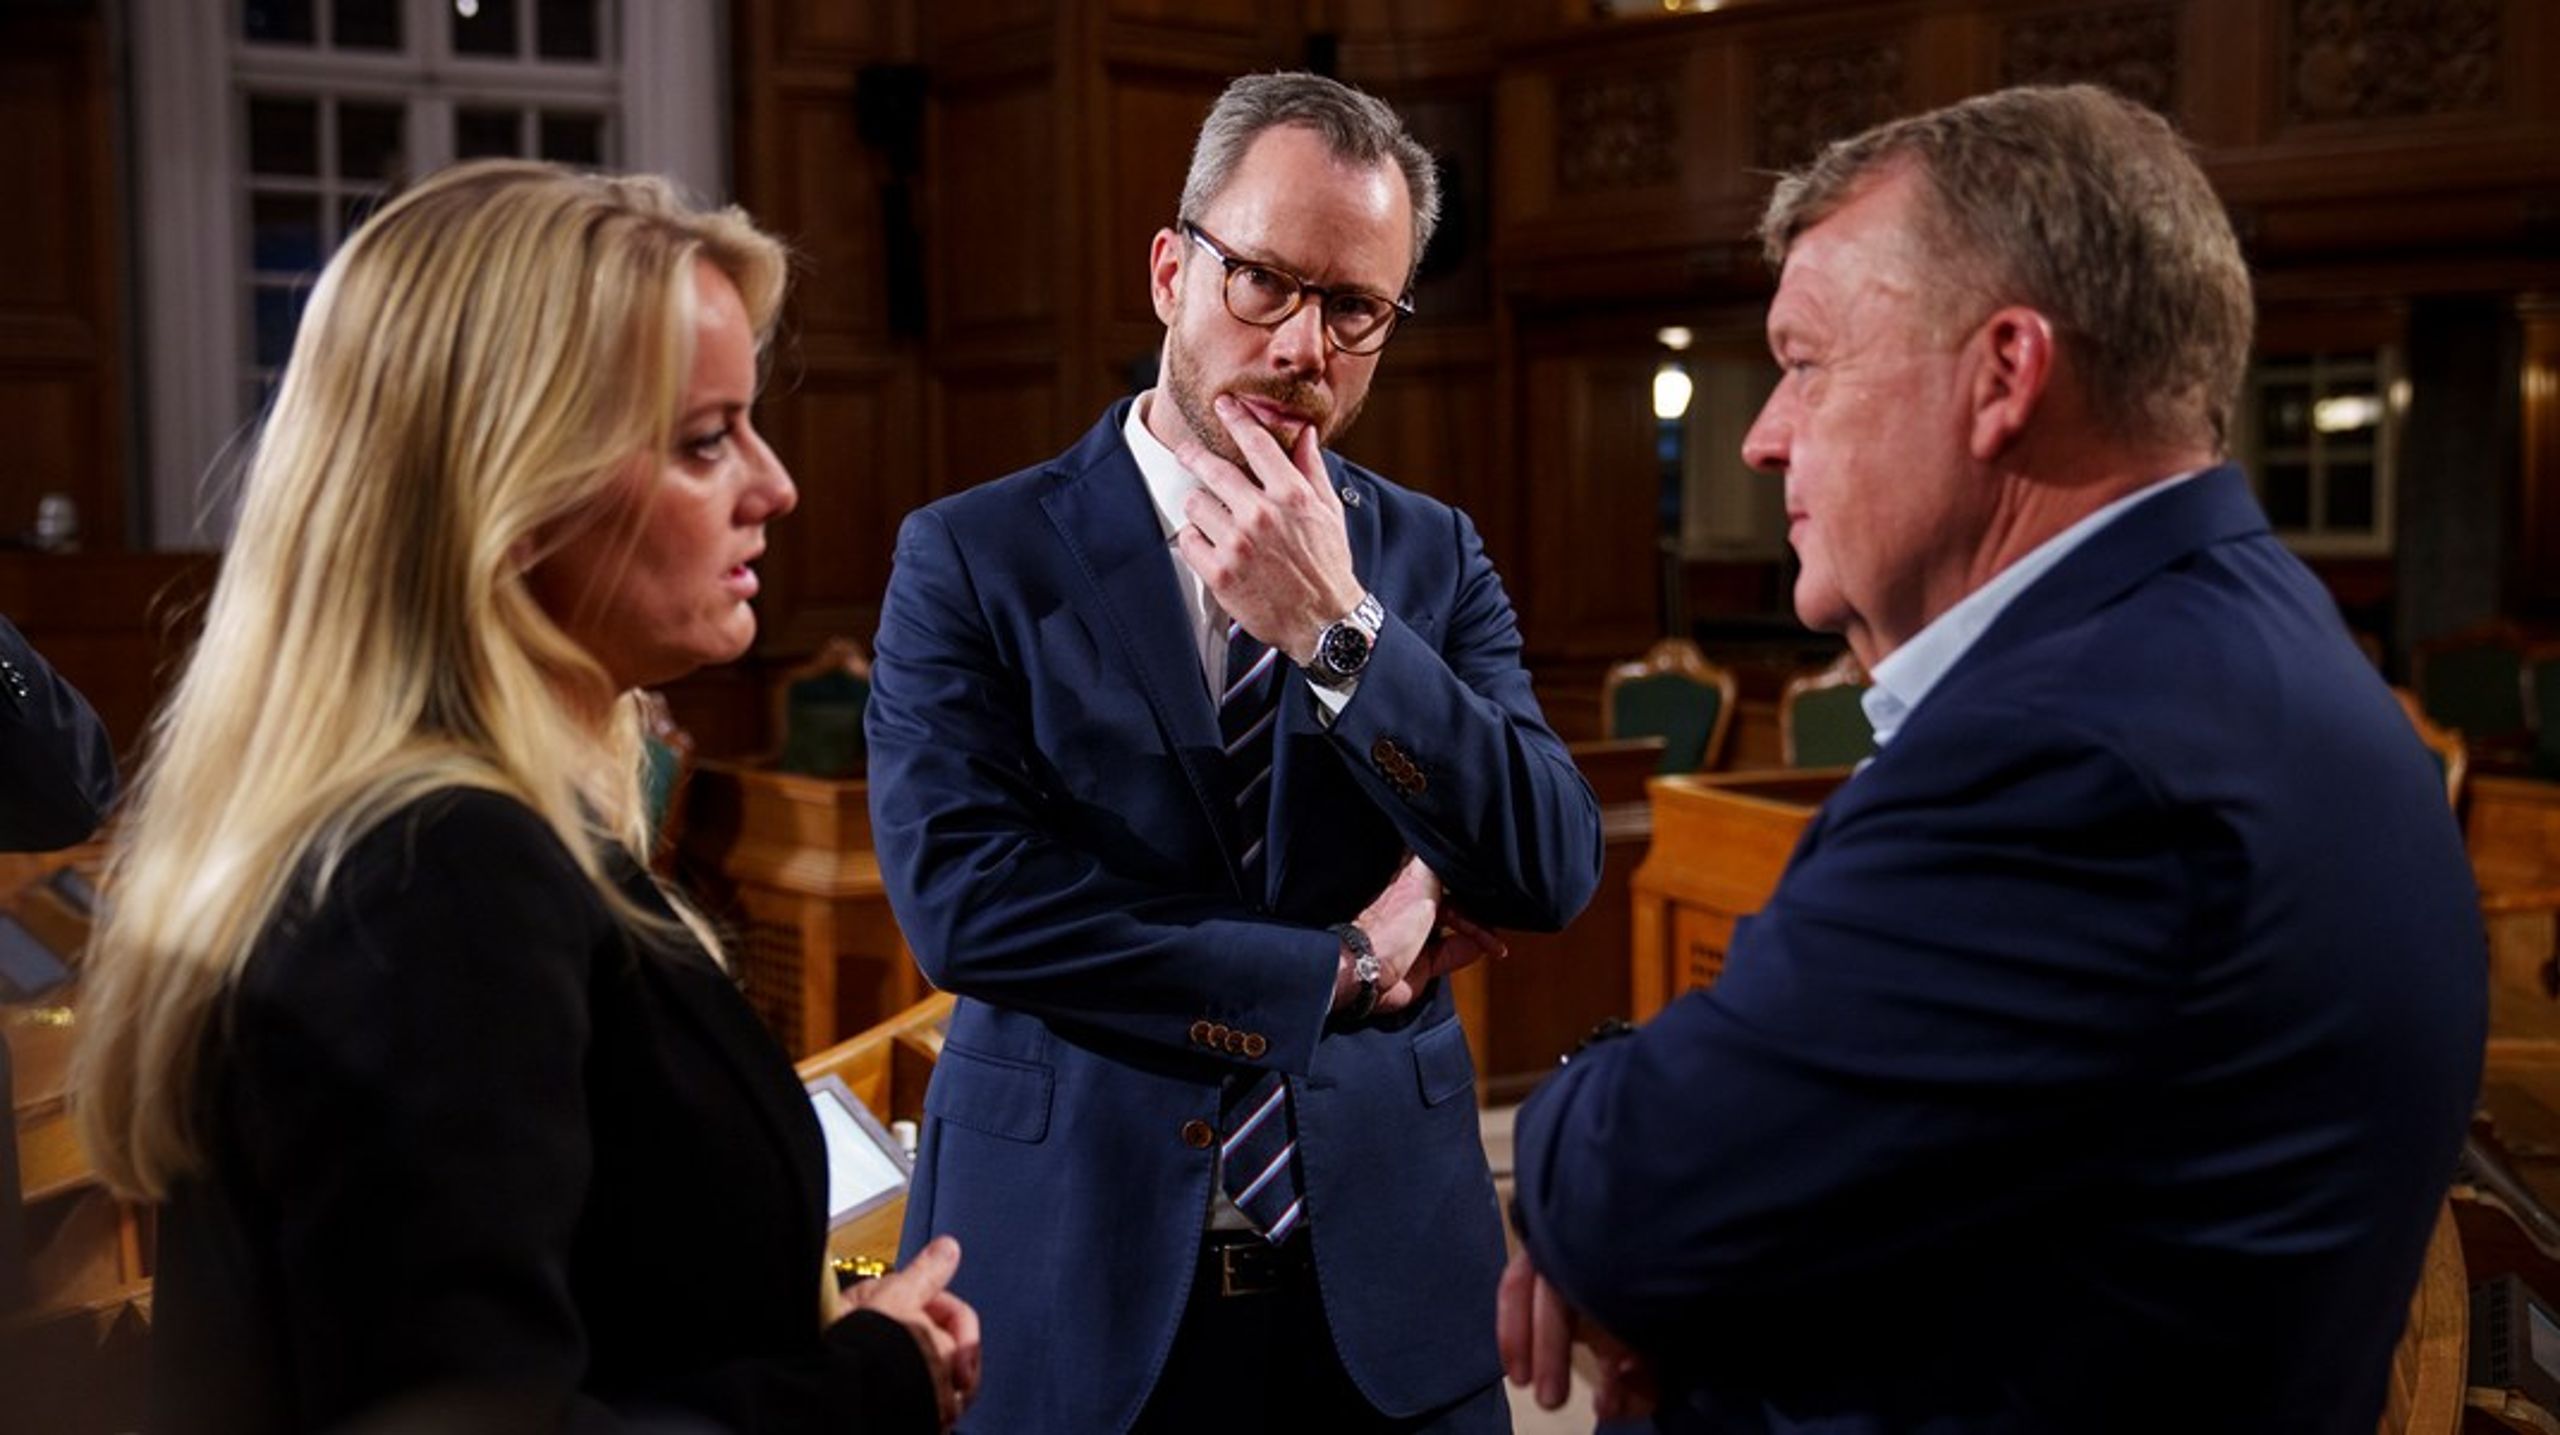 Jakob Ellemann-Jensen (V), Pernille Vermund (NB) og Lars Løkke (M) i et eftertænksomt øjeblik sent på valgaftenen, efter valgresultatet er kendt.